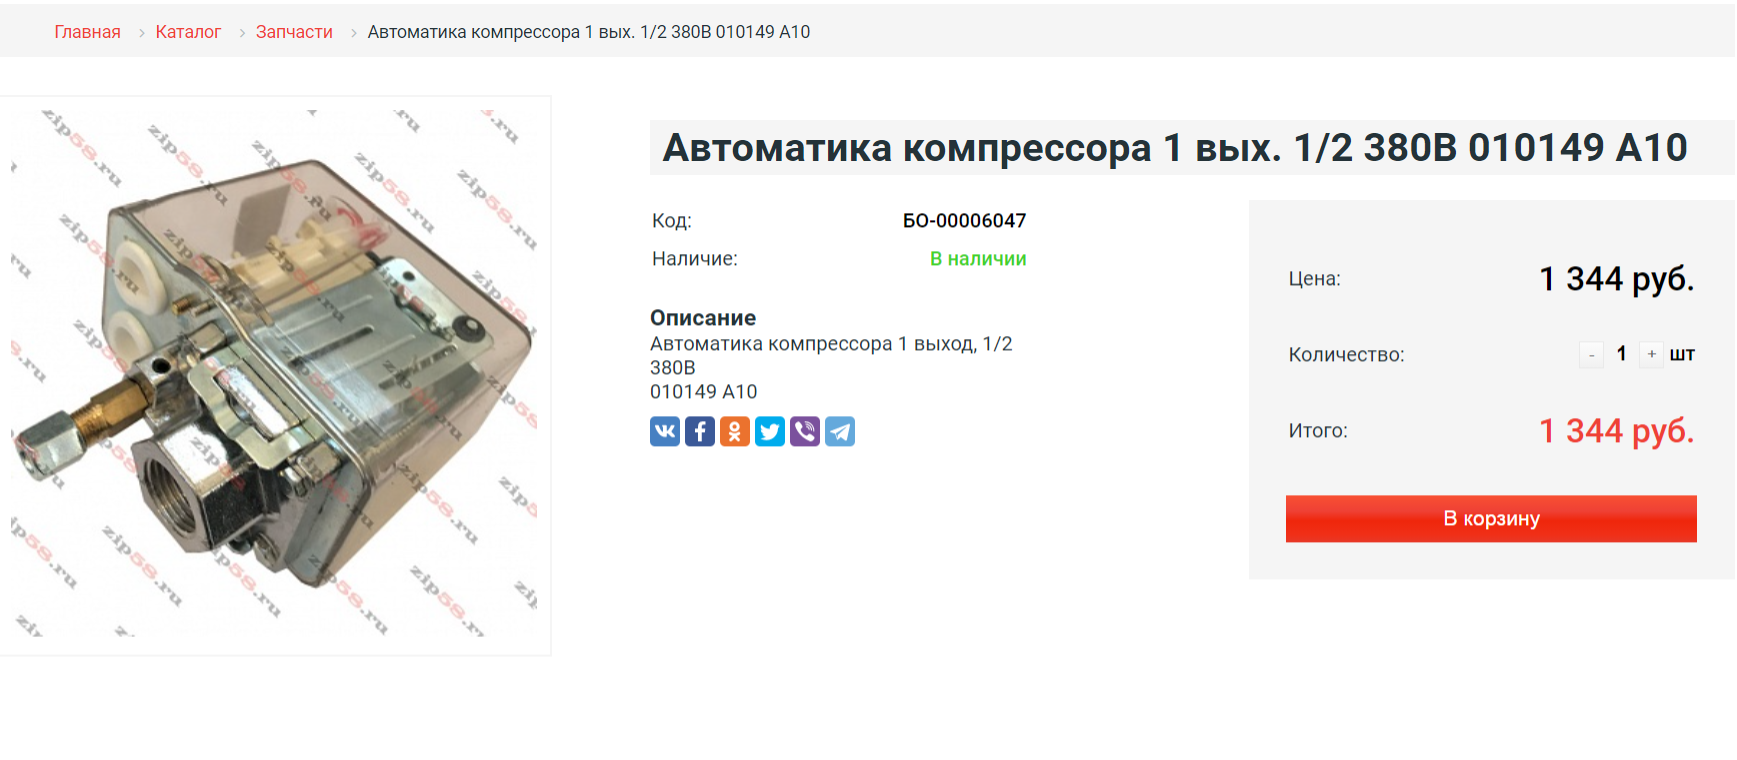 FireShot Capture 113 - Автоматика компрессора 1 вых. 1_2 380В 010149 А10 купить в магазине z_ - zip58.ru.png